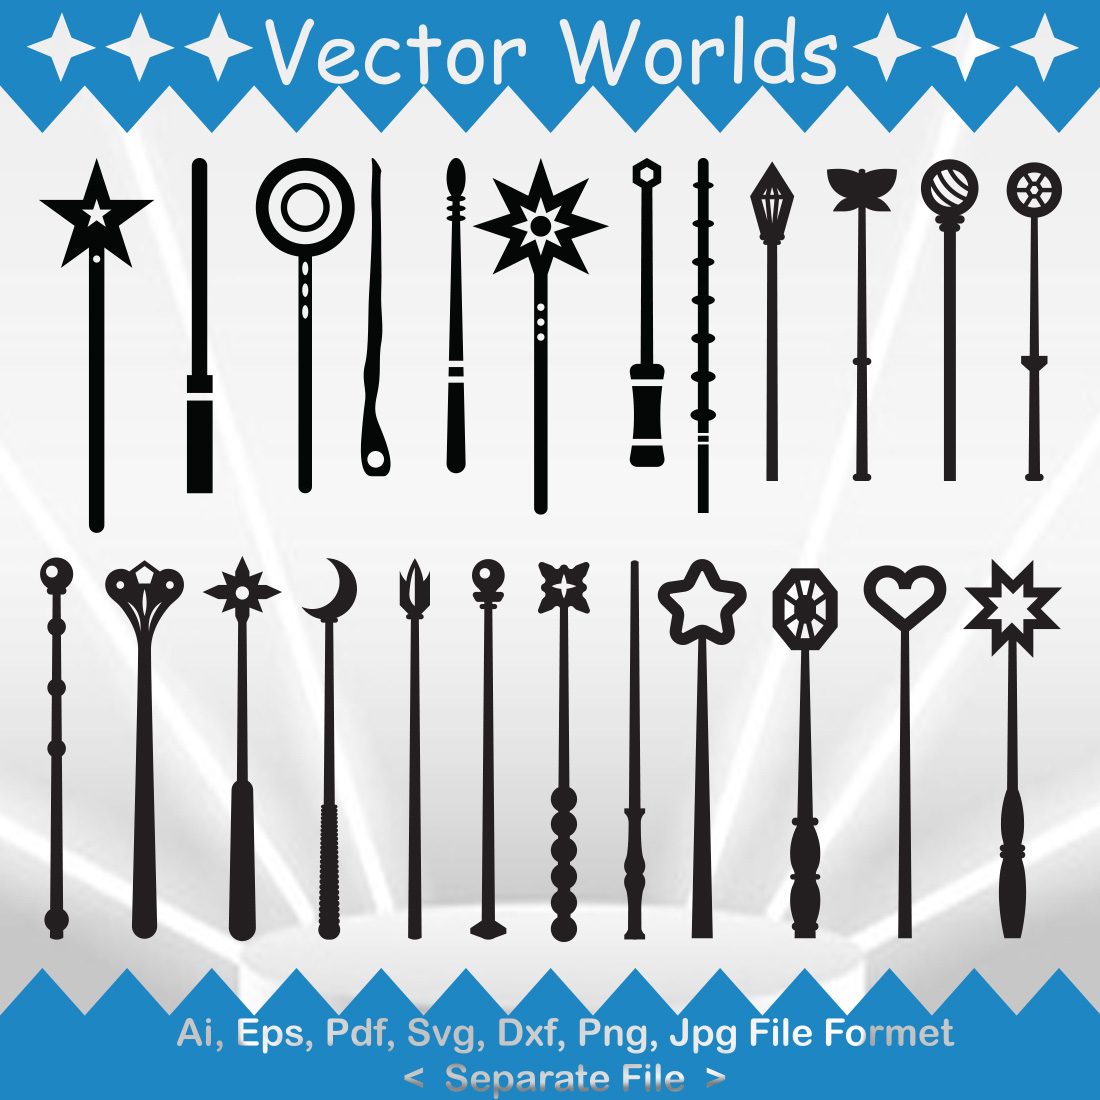 magic wand vector